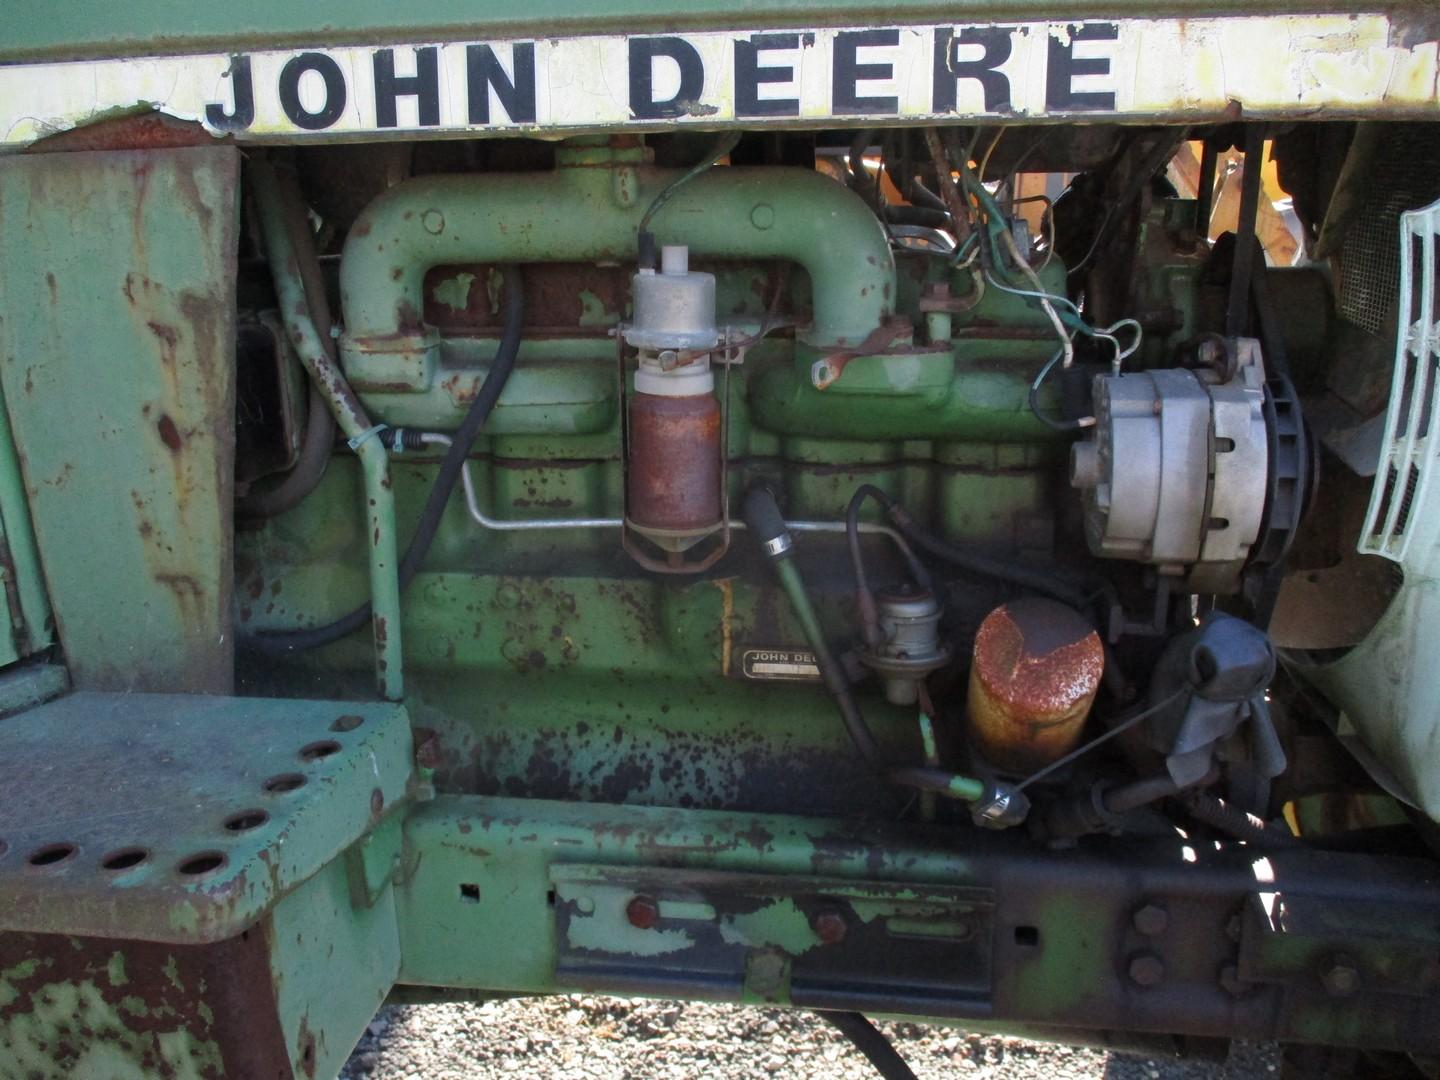 John Deere 4040 Tractor